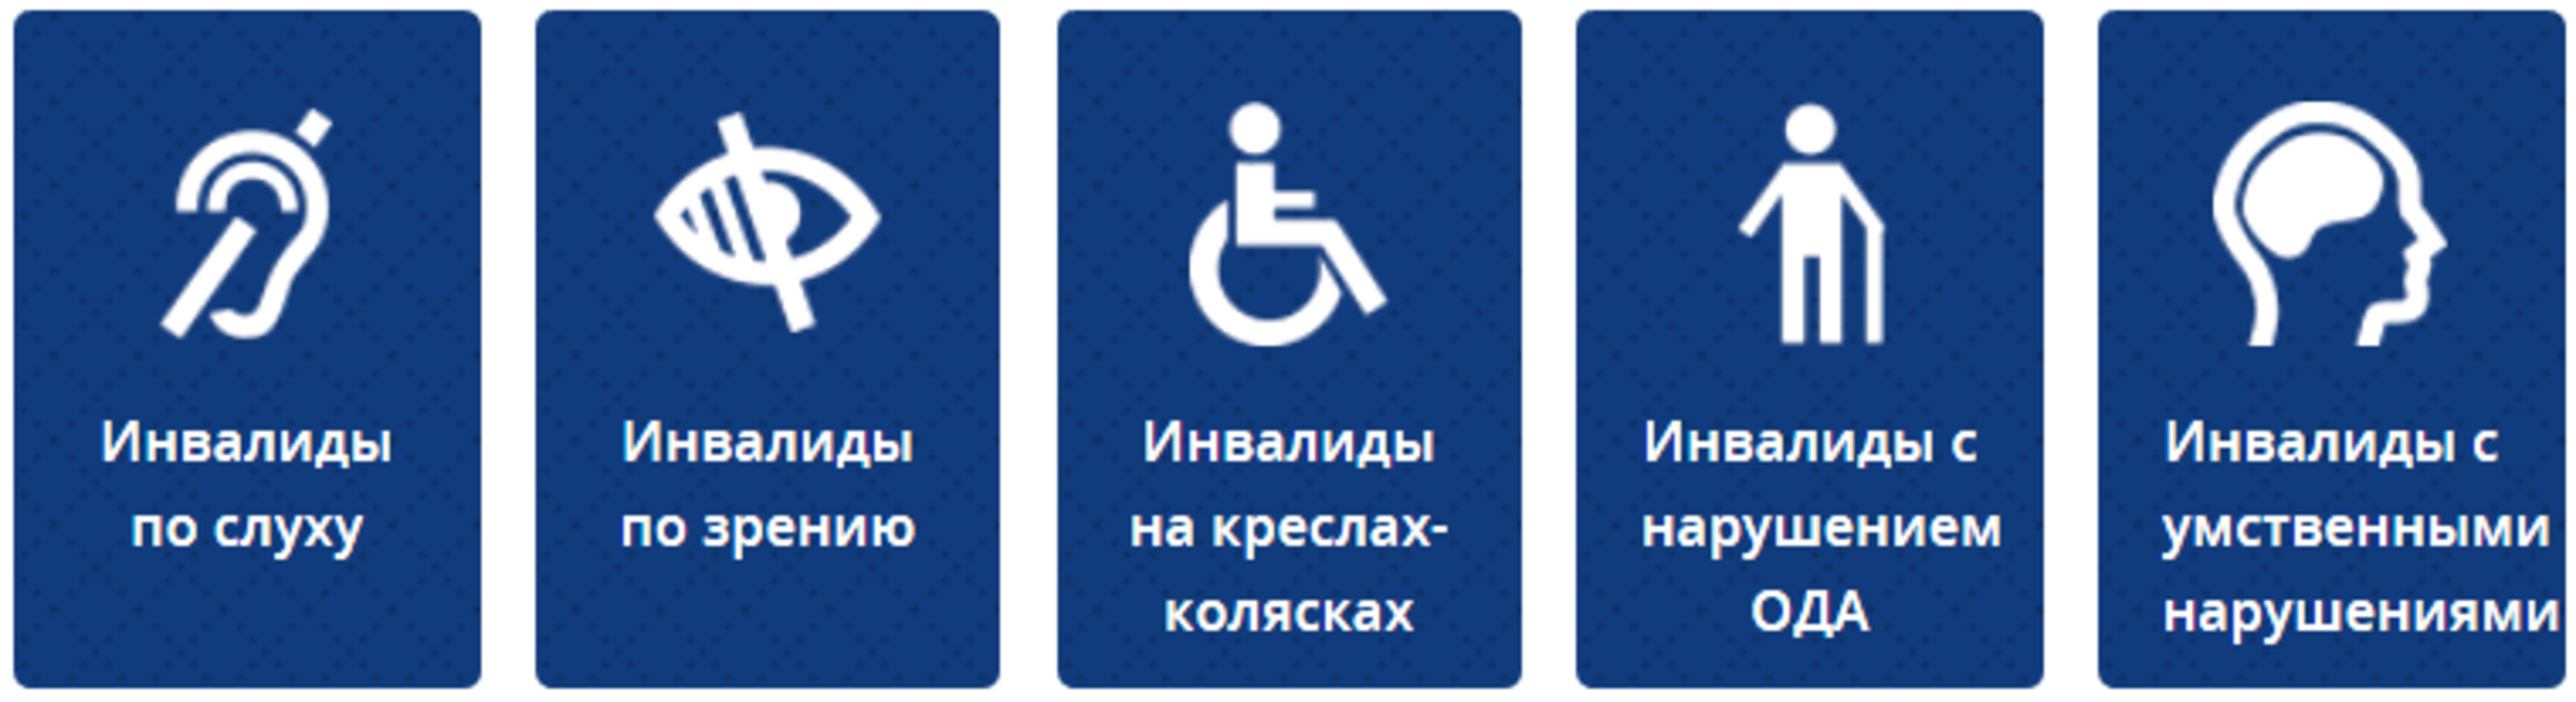 Направление доступной. Значения условных обозначений категорий инвалидов. Знак инвалиды с нарушением зрения. Табличка для инвалидов. Доступная среда таблички.